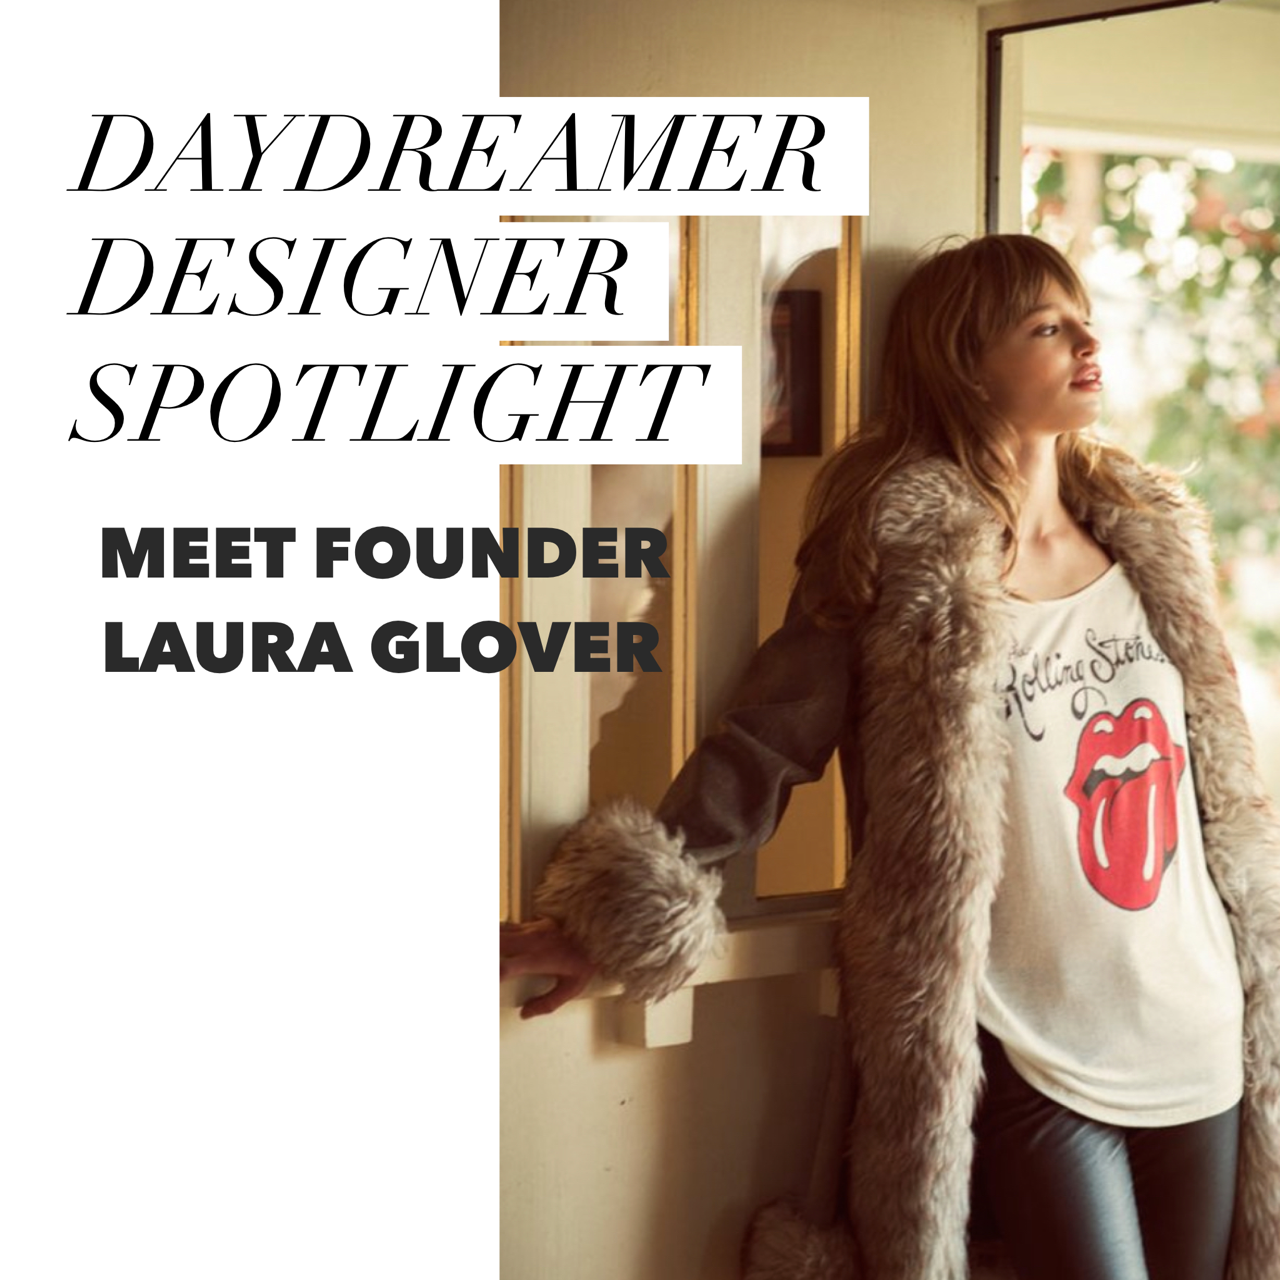 Meet DAYDREAMER designer Laura Glover